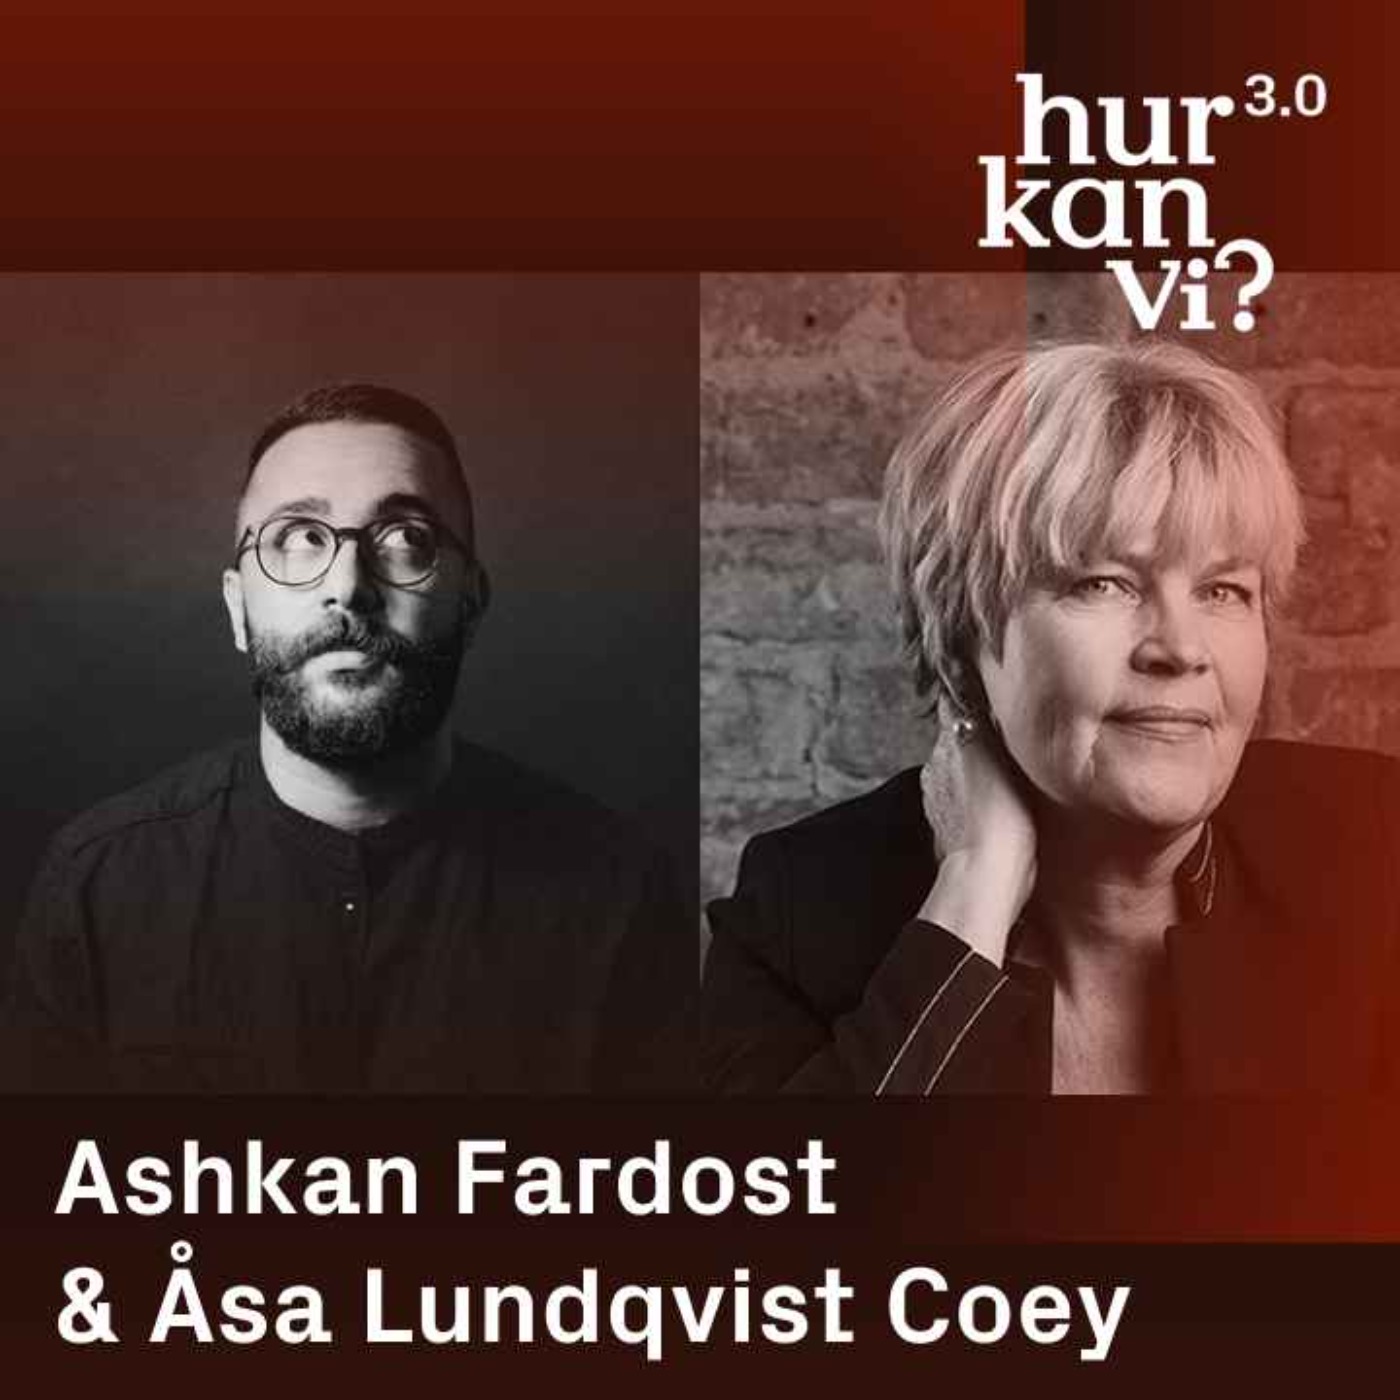 Åsa Lundqvist Coey & Ashkan Fardost